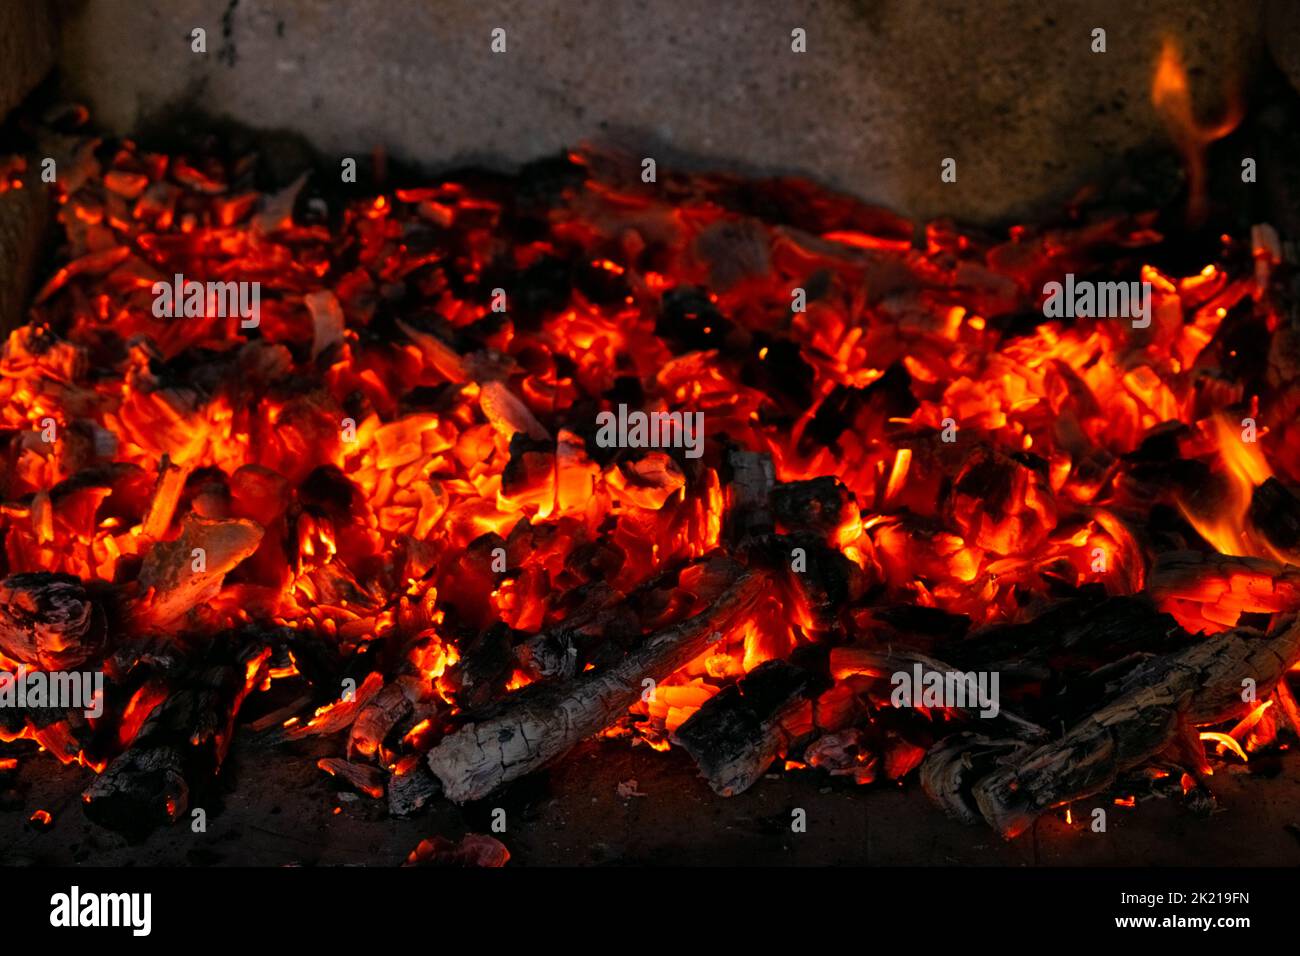 Carboni brucianti nel fuoco. Le brace di legno bruciano con fuoco rosso ad alta temperatura Foto Stock